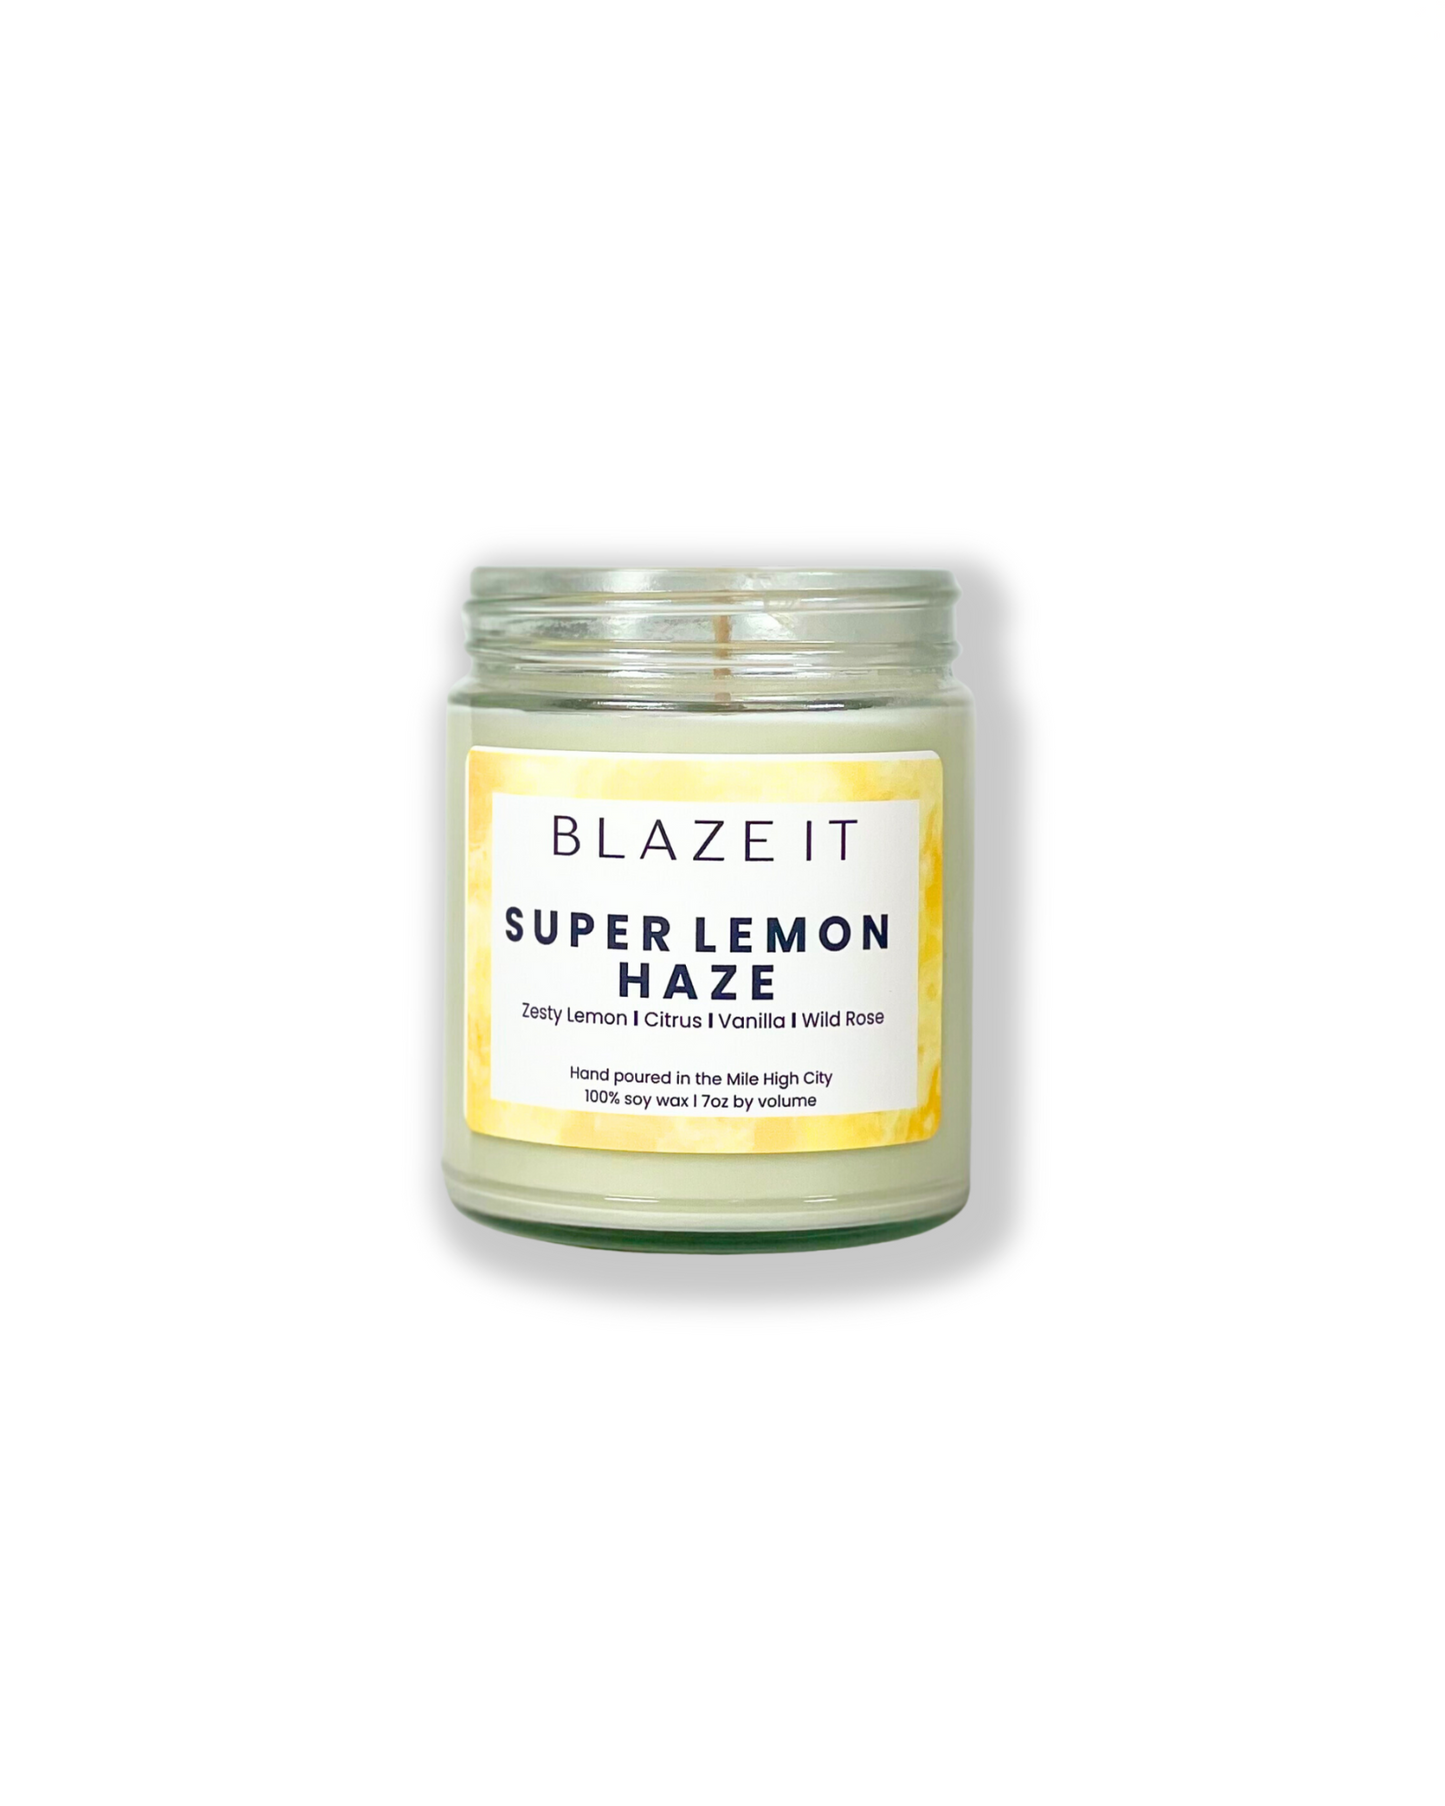 Super Lemon Haze soy candle - Blaze It Candle Co